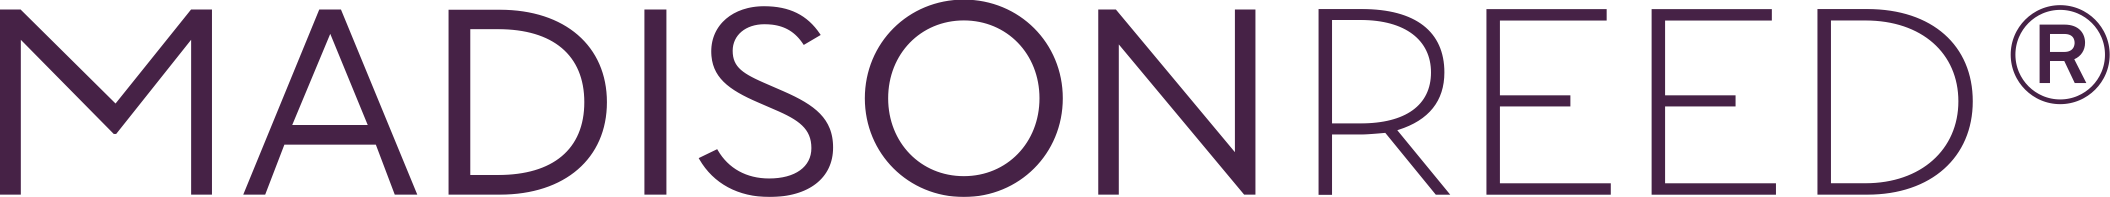 Madison Reed-Logo